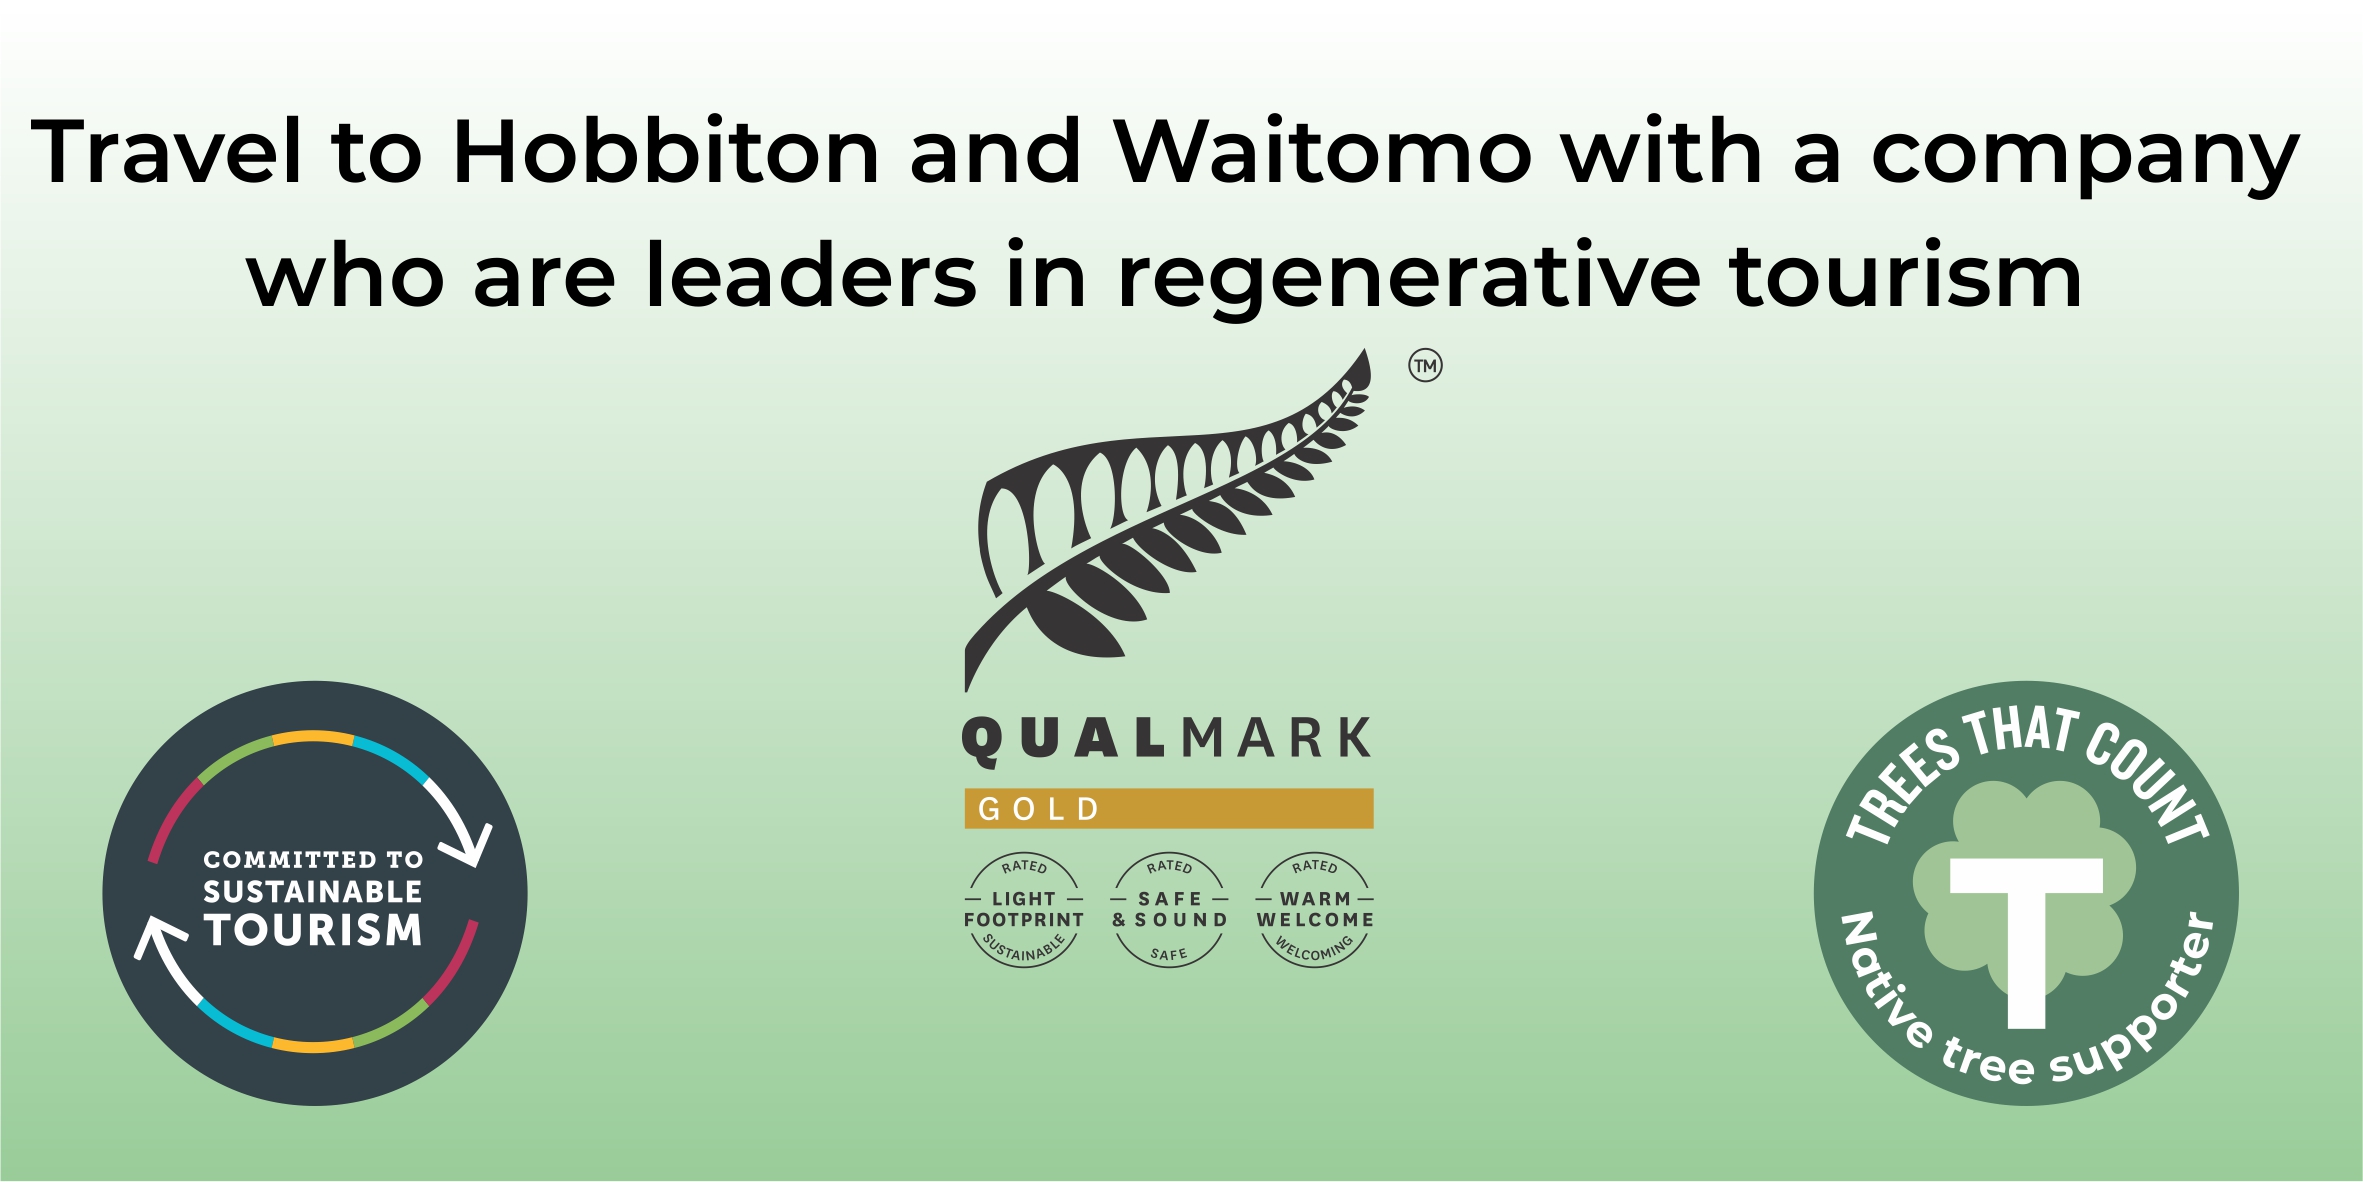 Hobbiton and Waitomo with a regenerative tourism company